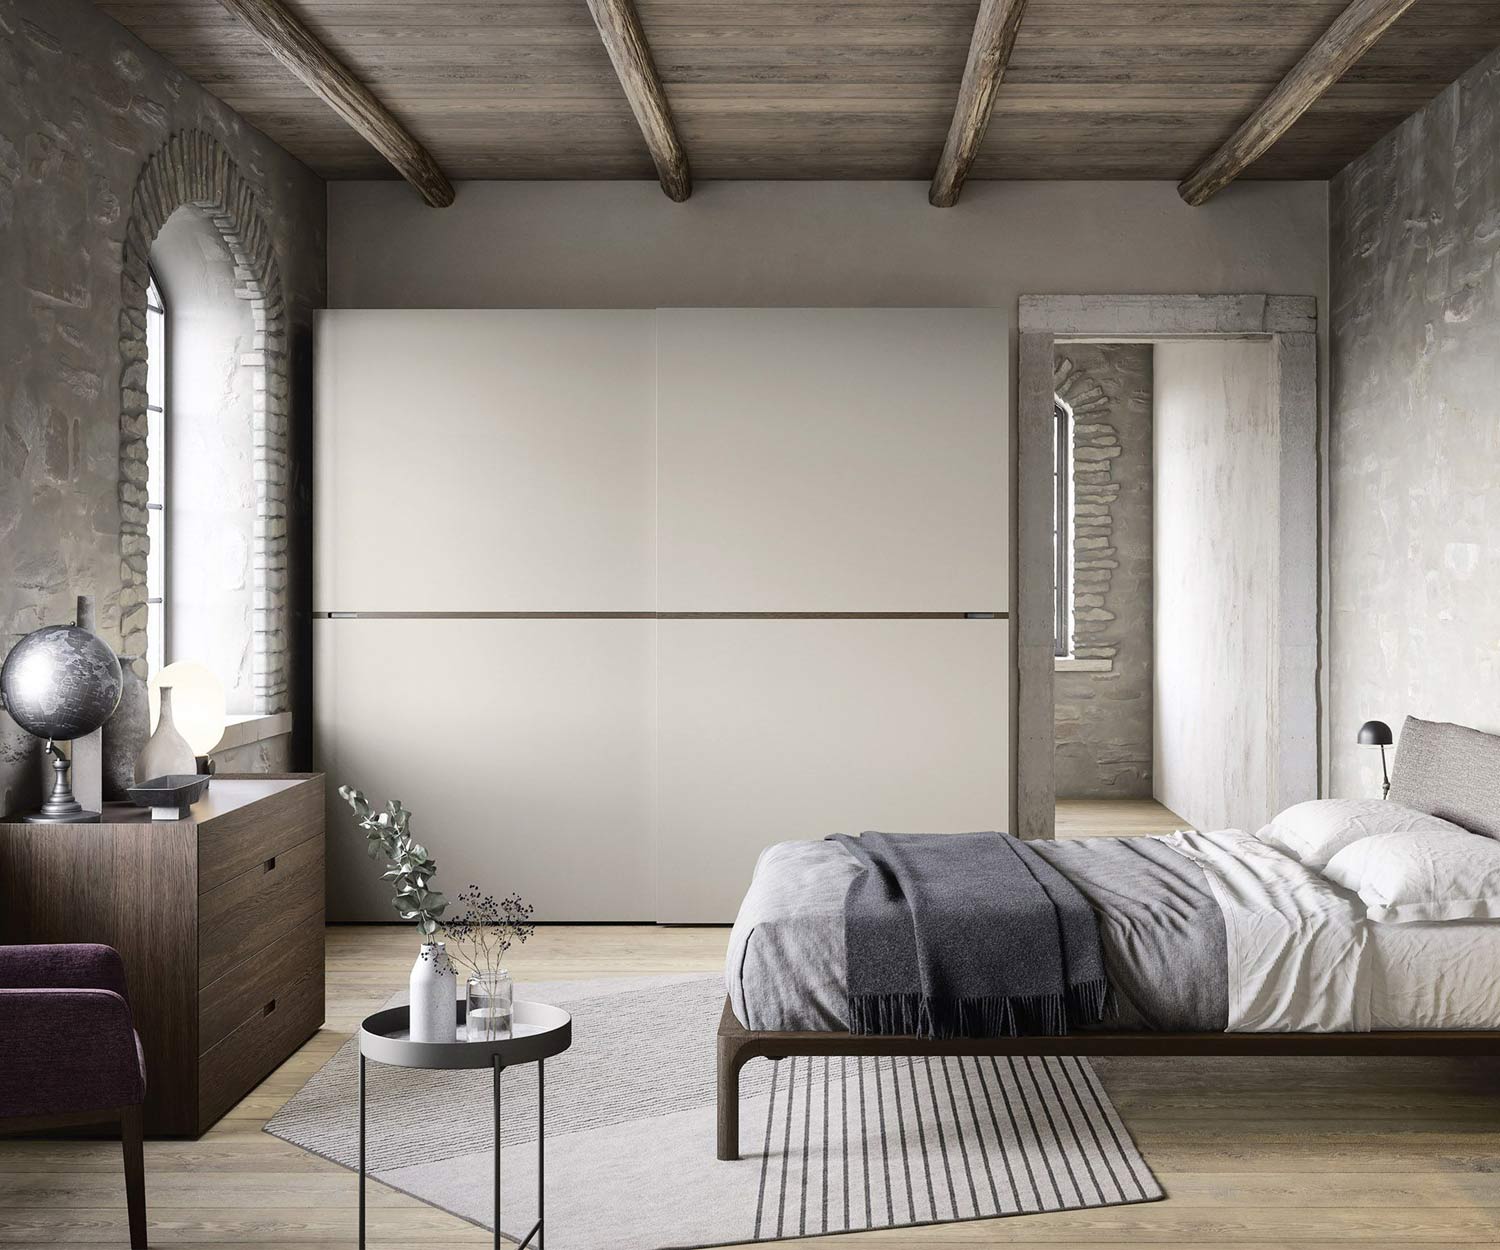 Novamobili Middle wardrobe with sliding doors minimal modern luxury